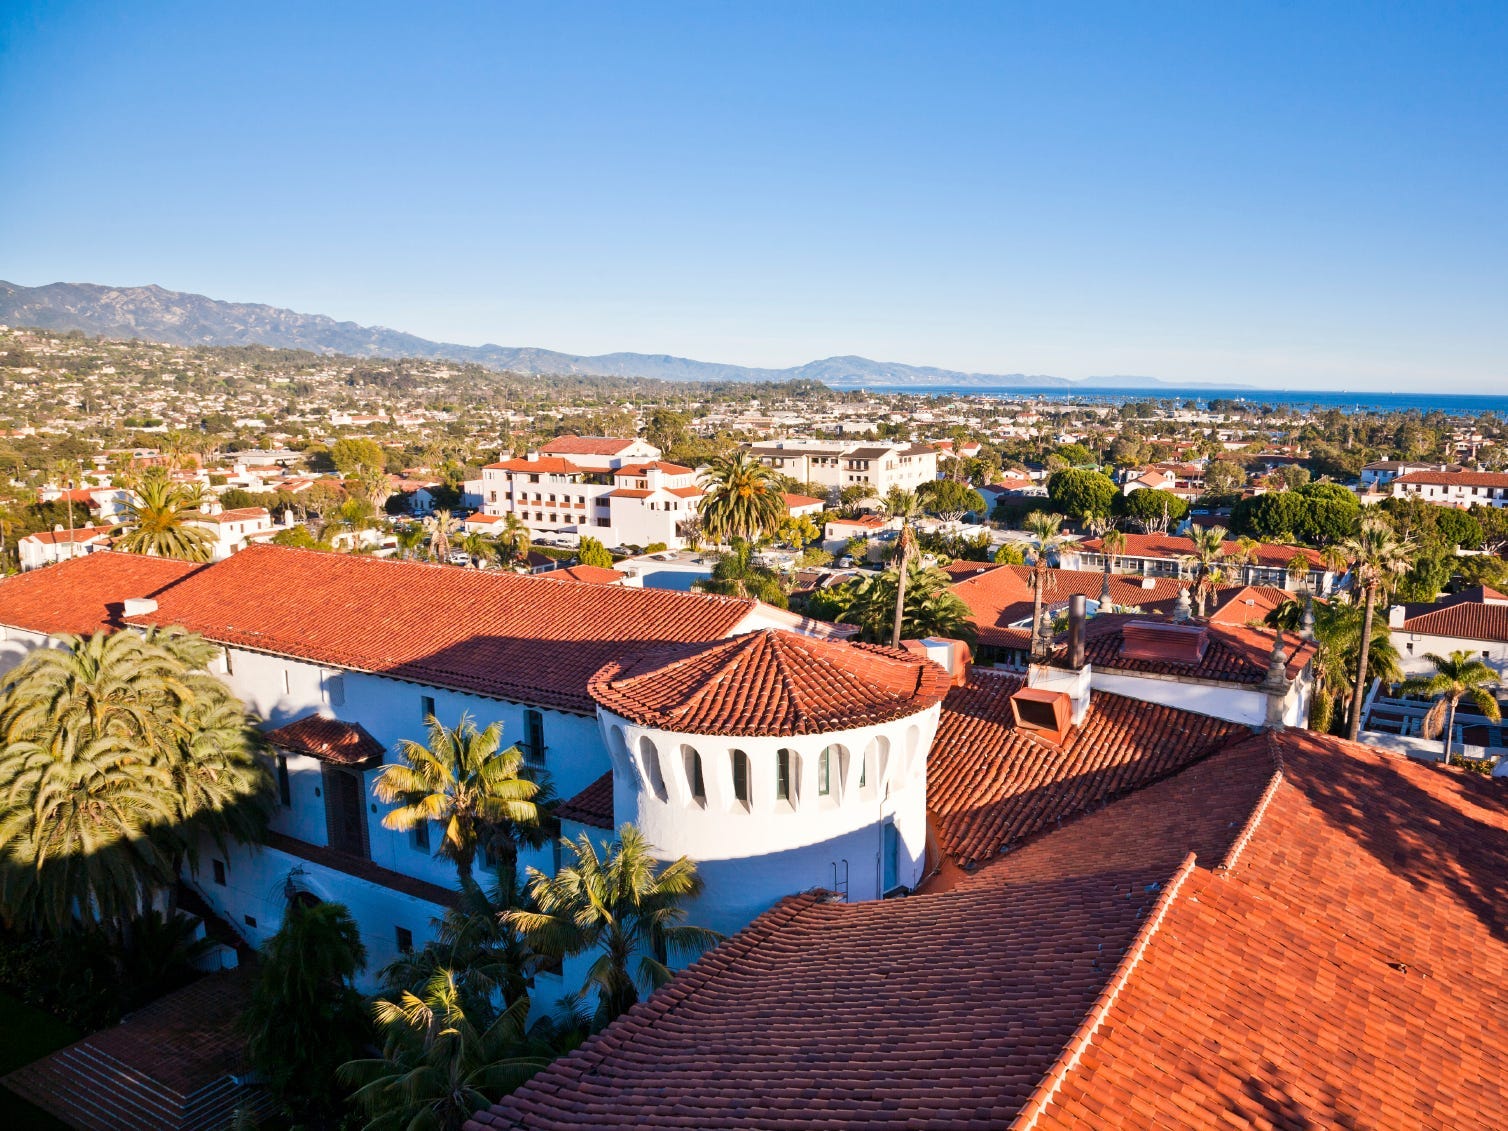 Santa Barbara ist einer der wohlhabendsten Orte in Kalifornien.